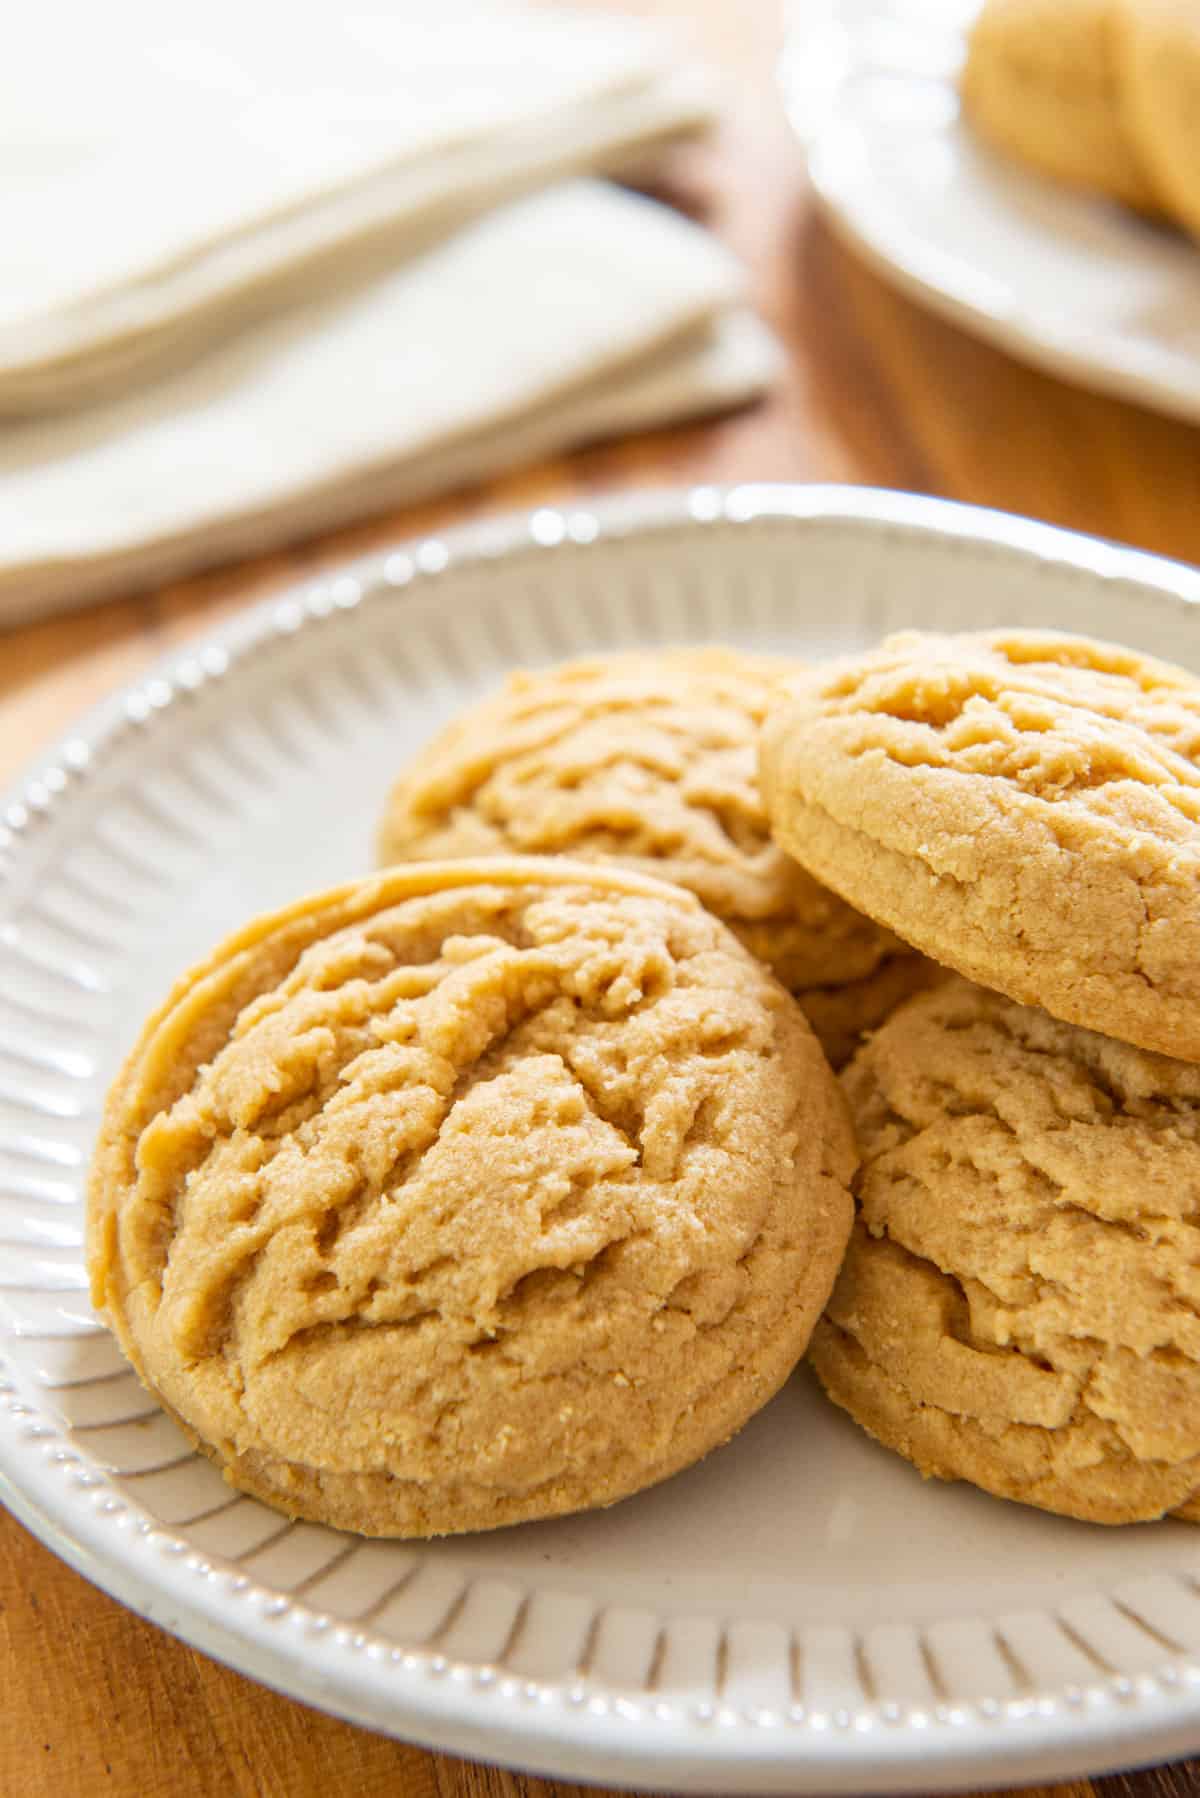 https://www.fifteenspatulas.com/wp-content/uploads/2021/08/Peanut-Butter-Cookies.jpg